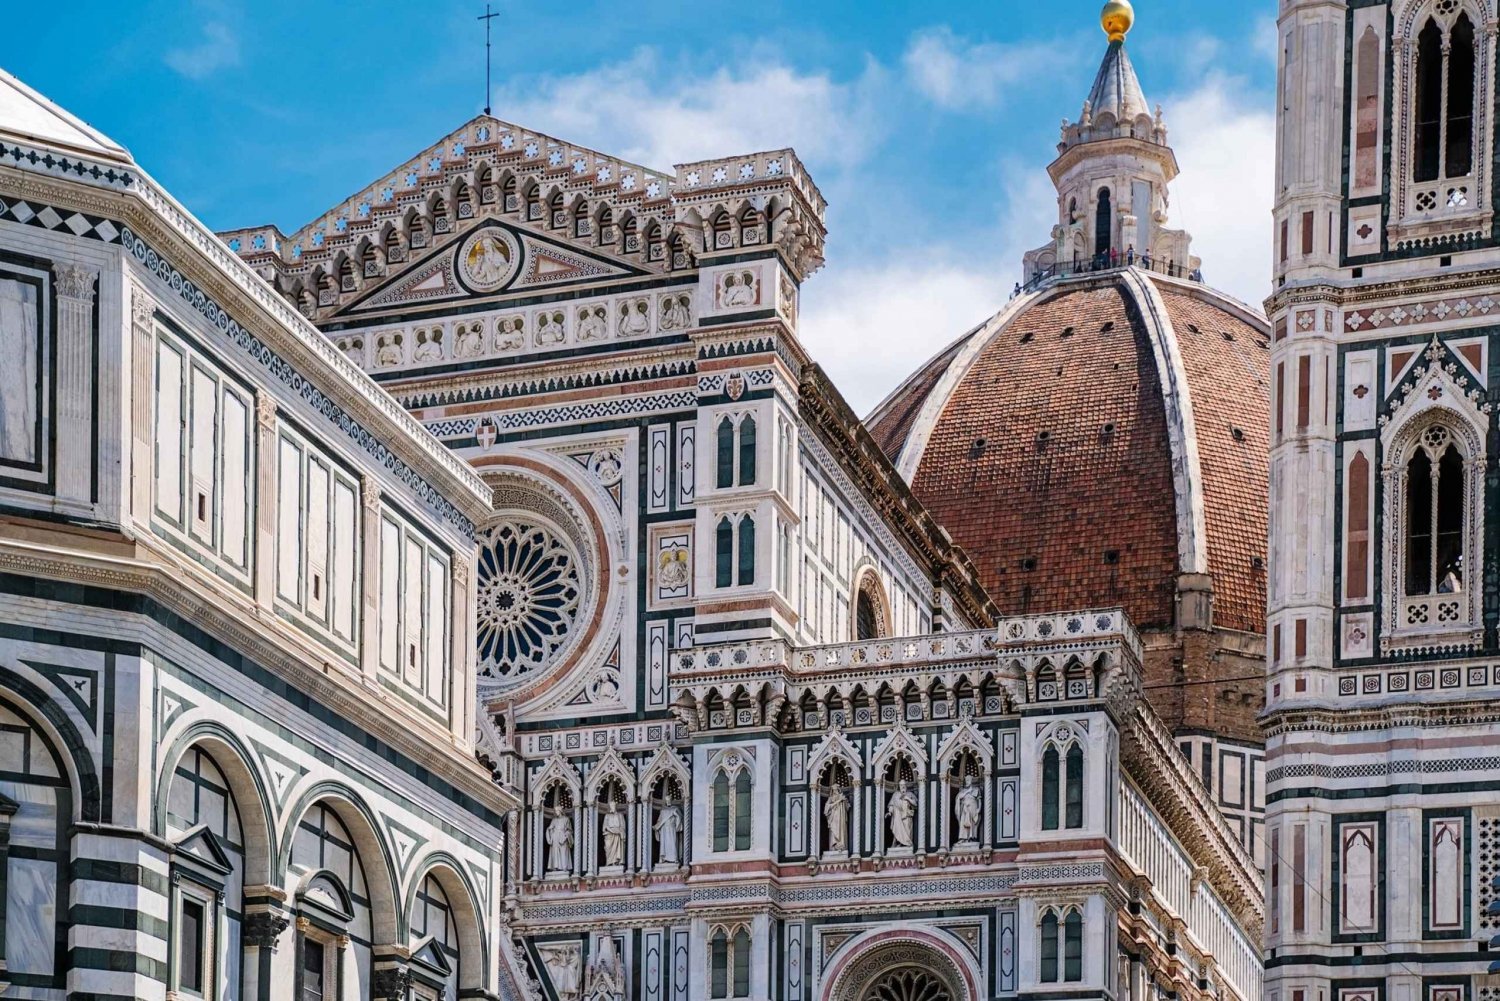 Florens: Rundtur i Duomo-området med biljett till klättring i Giottos torn